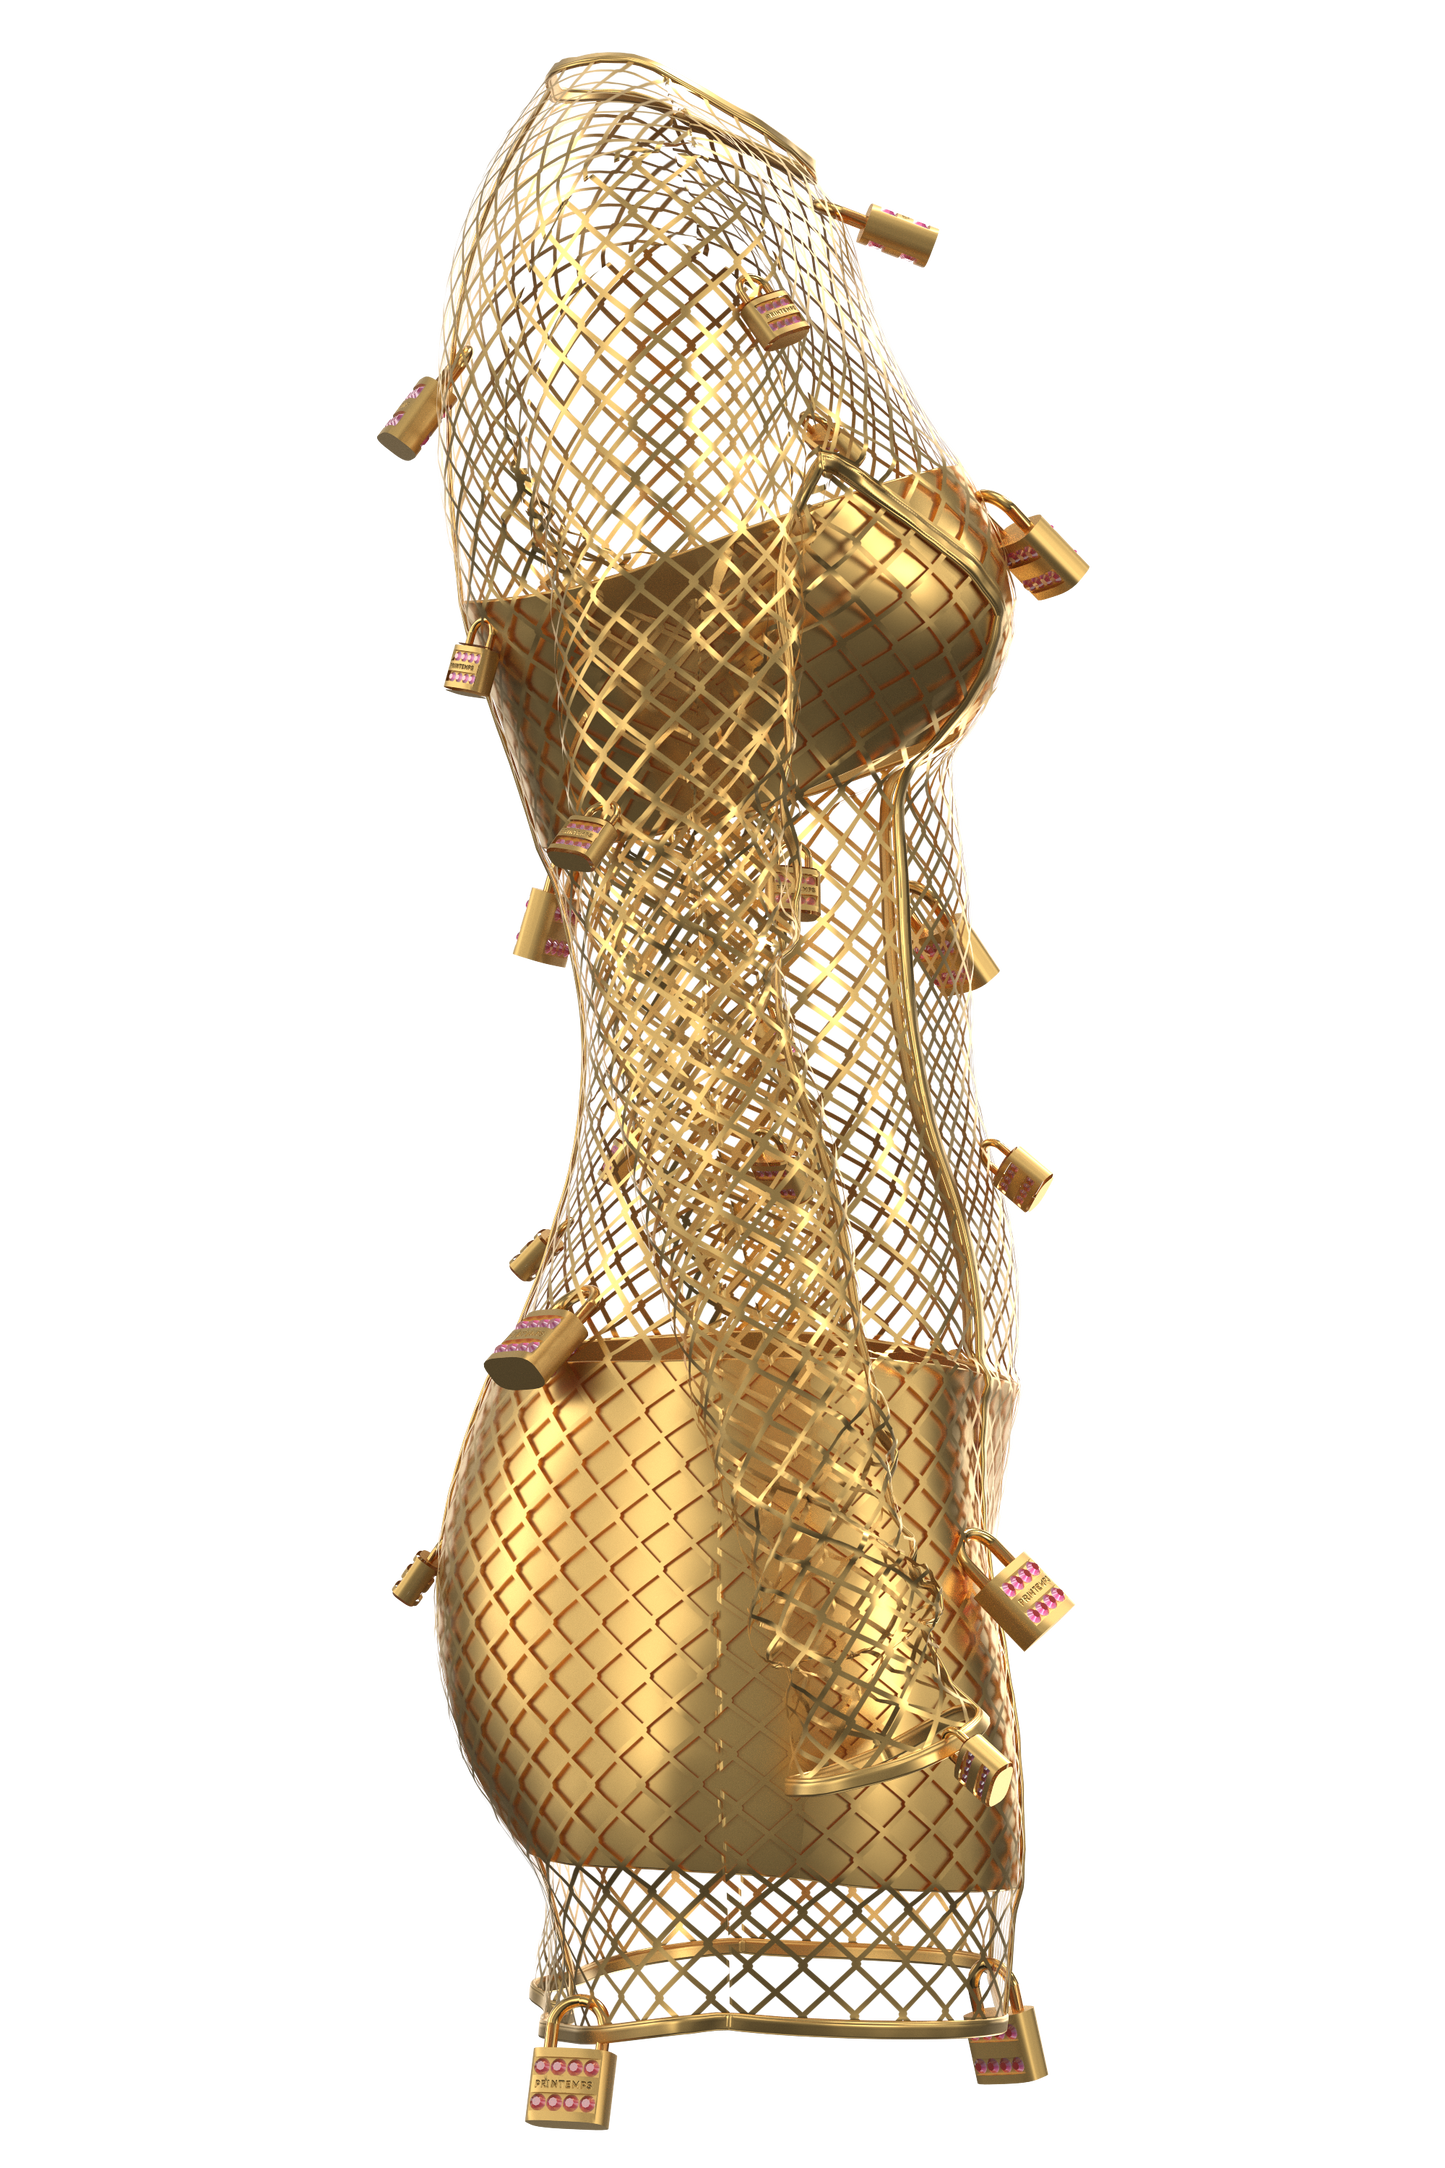  | Gold Padlock dress